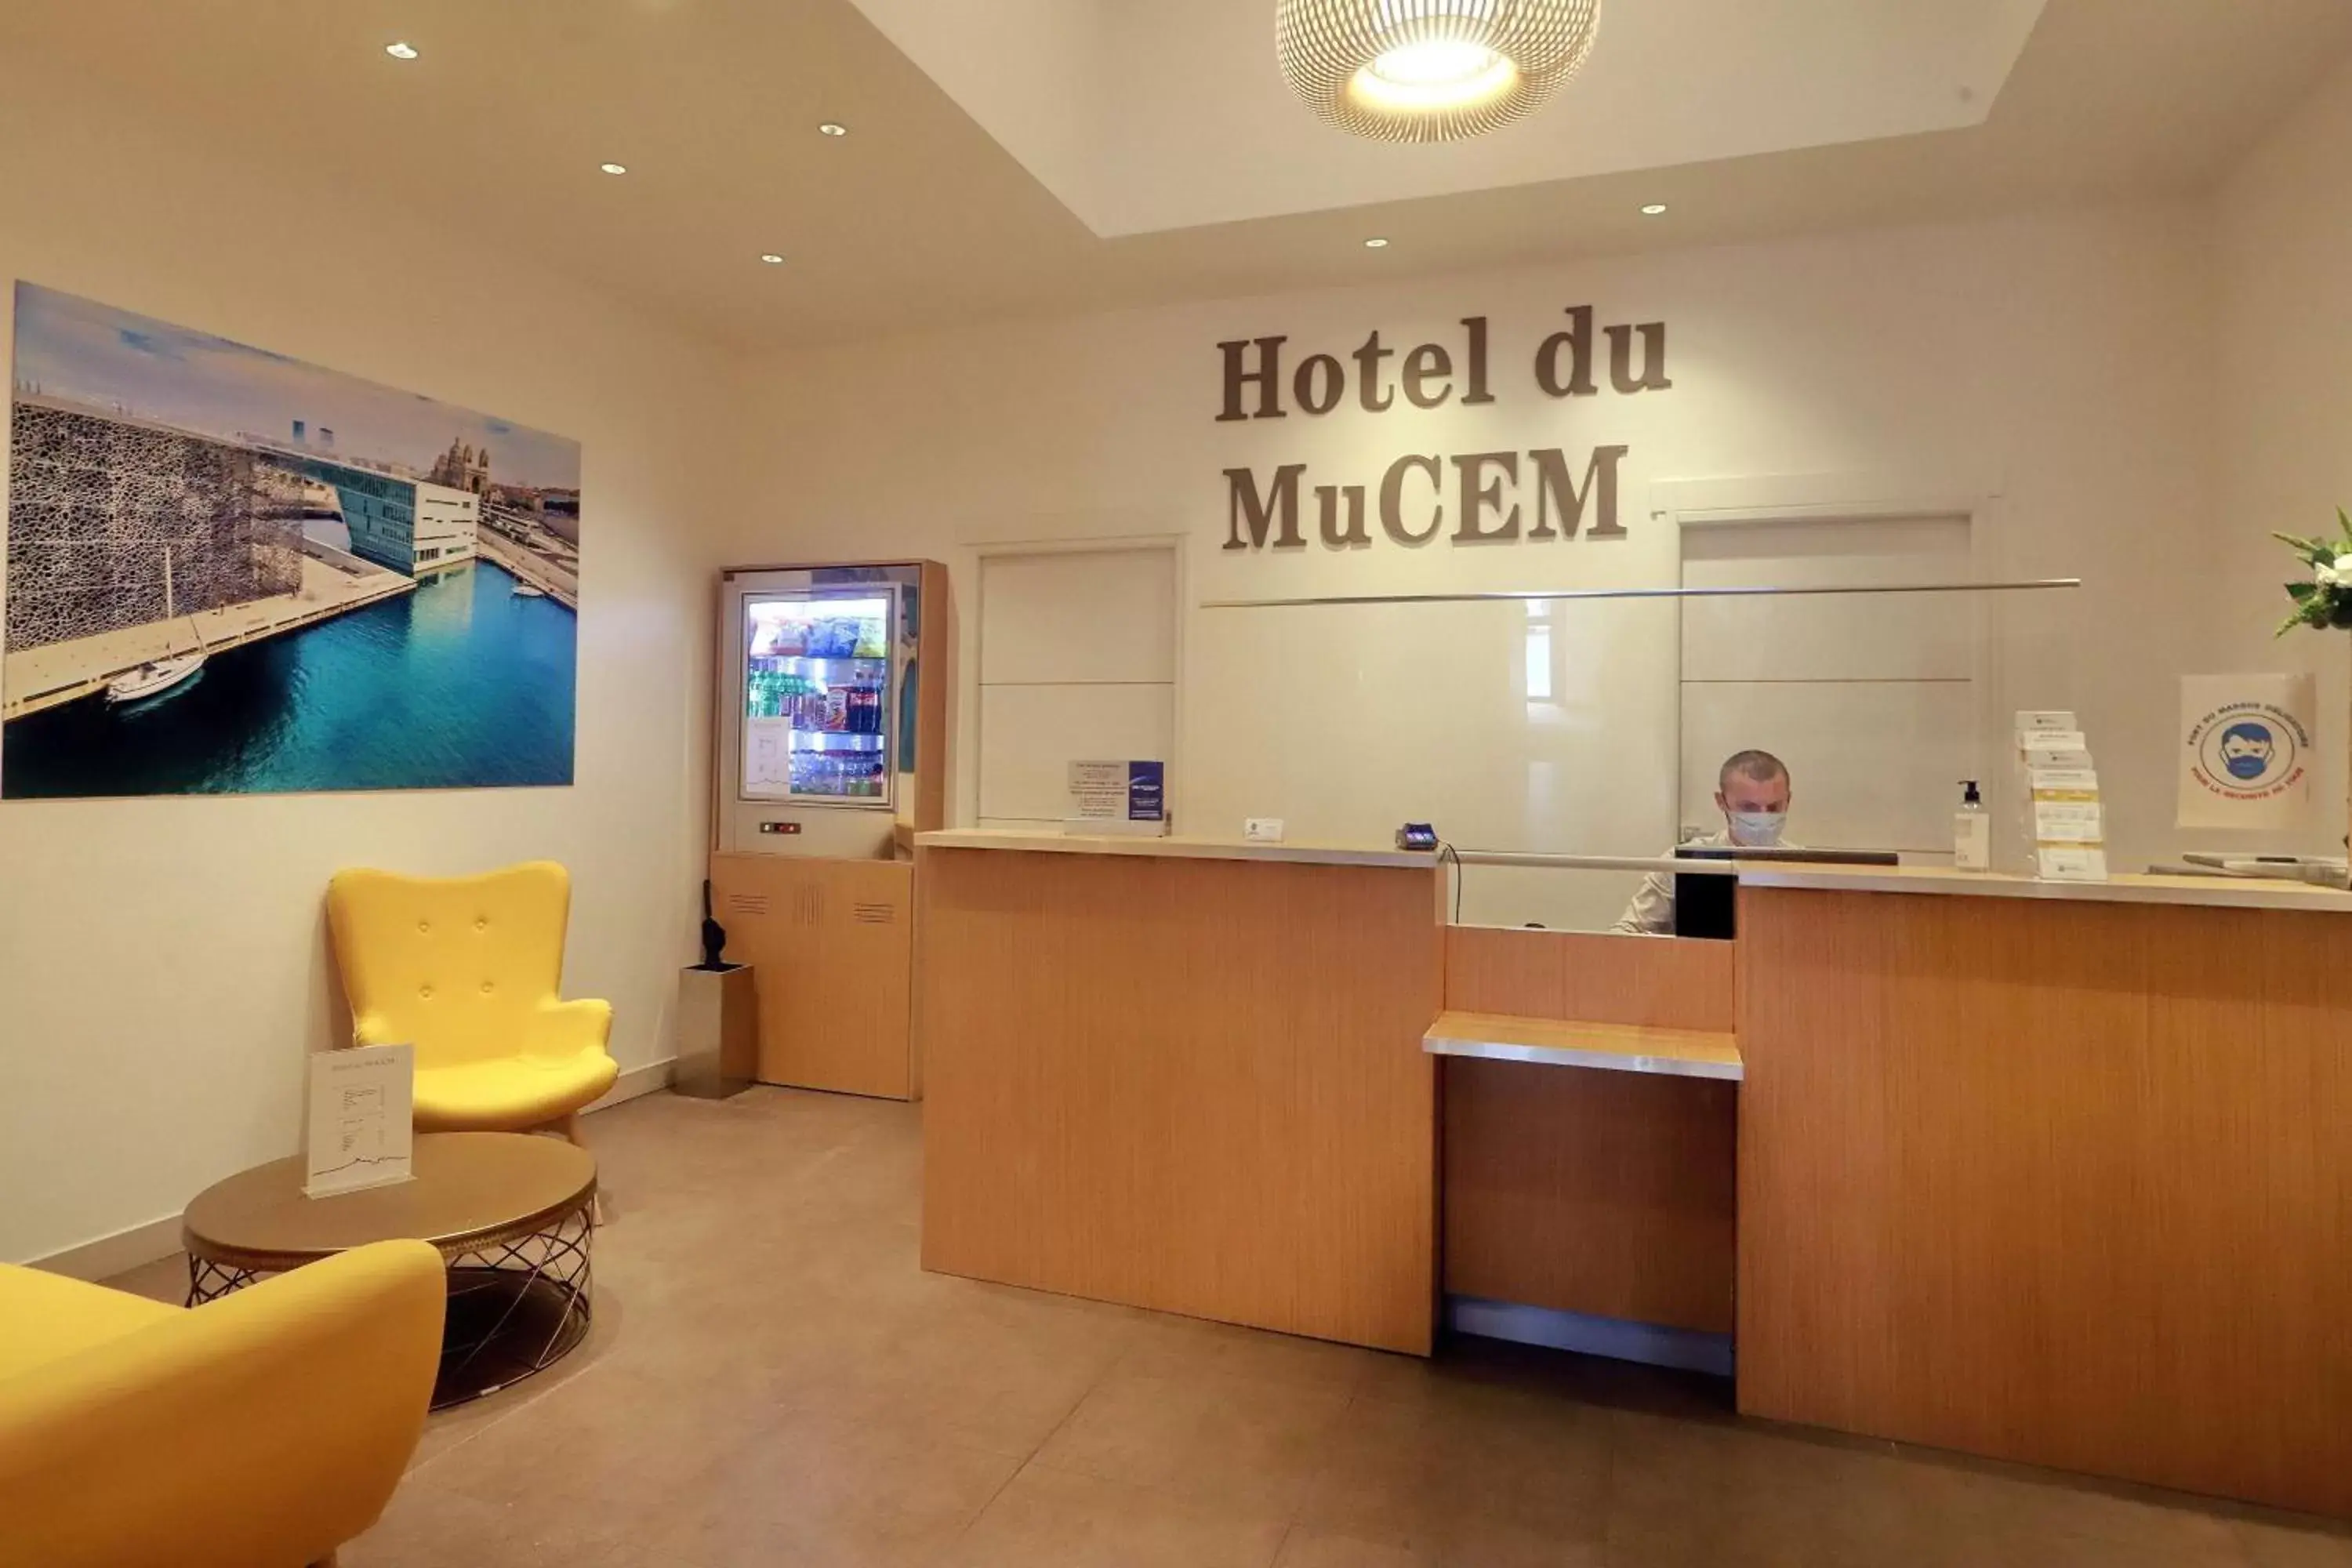 Lobby or reception, Lobby/Reception in Best Western Hotel du Mucem